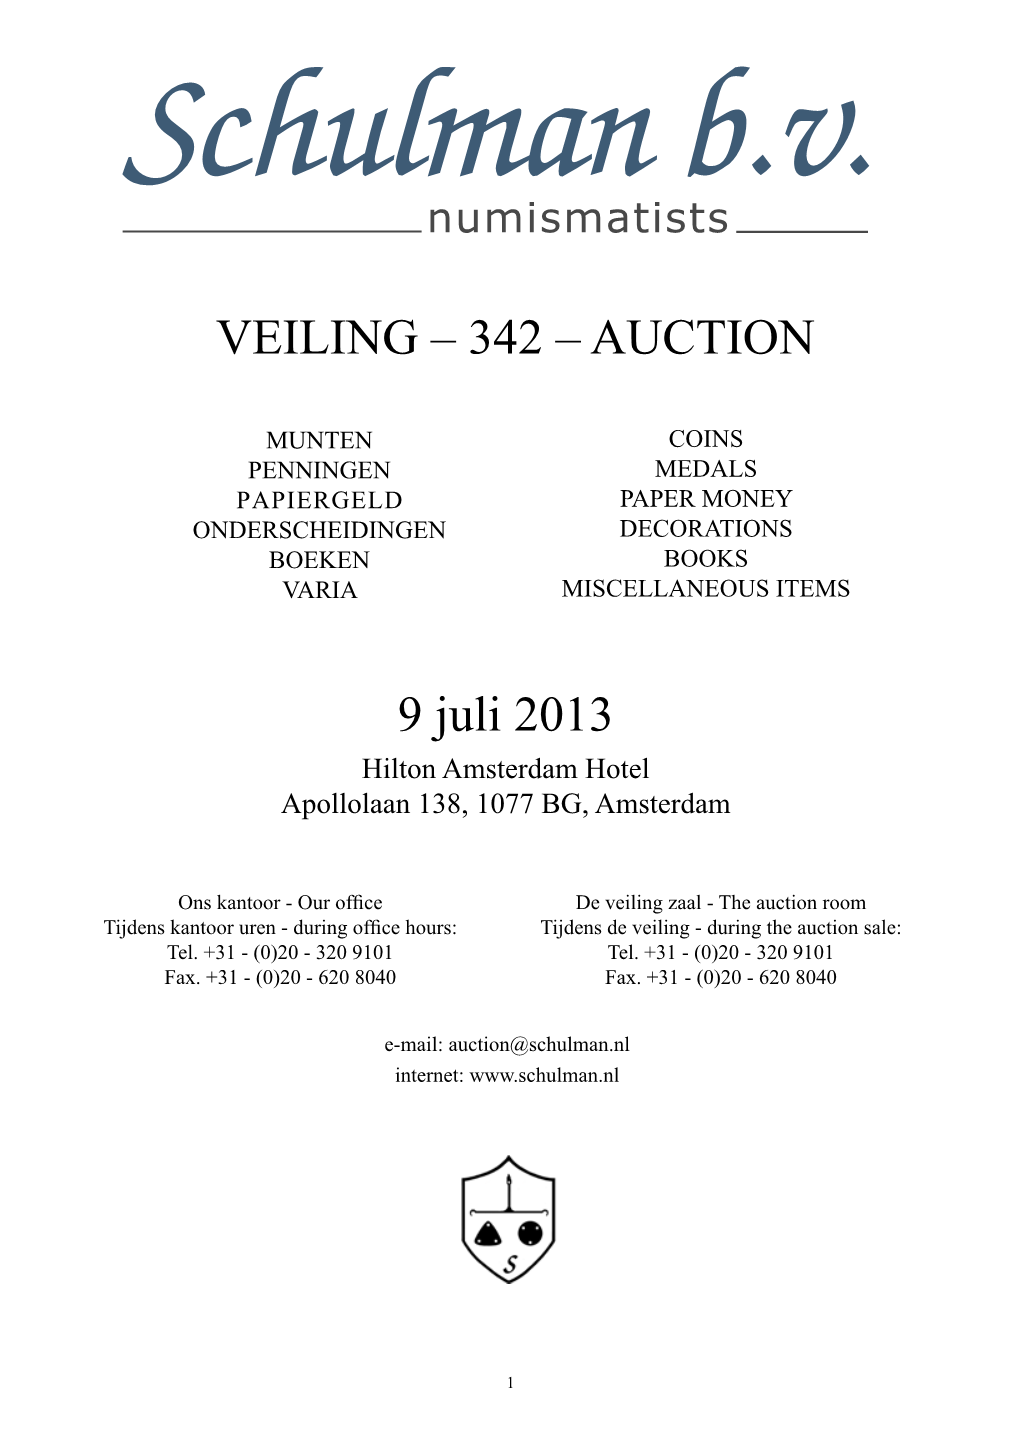 VEILING – 342 – AUCTION 9 Juli 2013